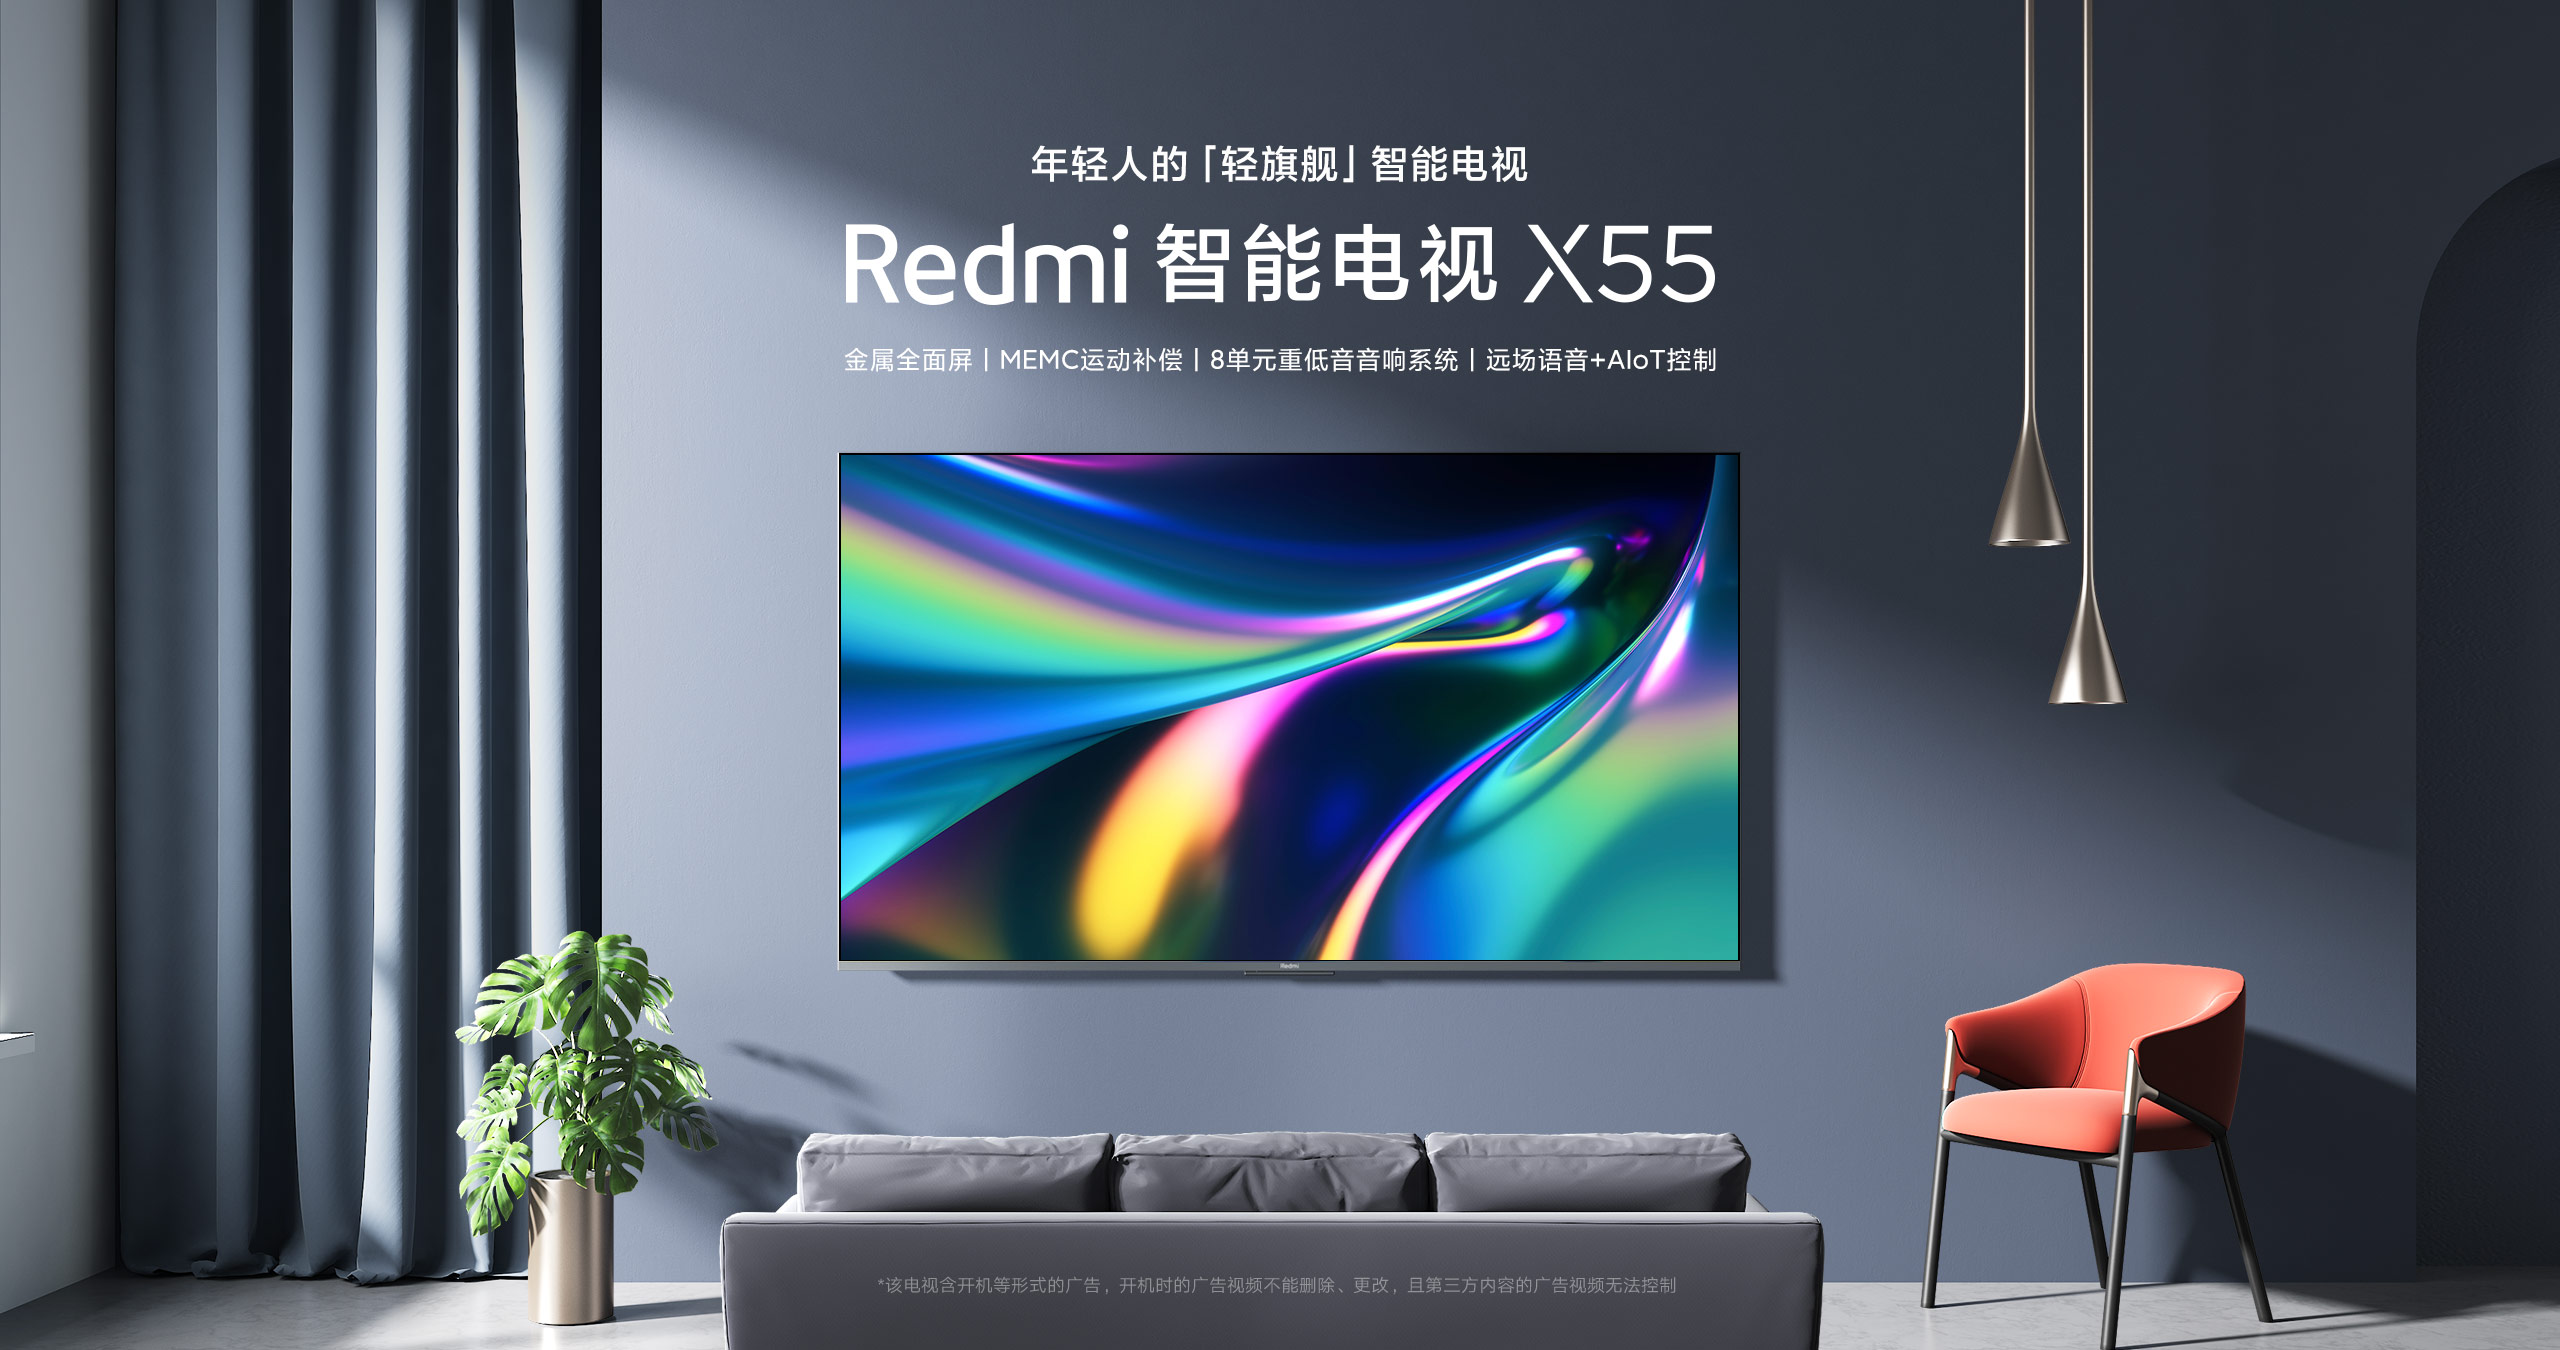 Реклама телевизора xiaomi. Xiaomi Redmi x 55. Xiaomi Redmi x55 телевизор. Телевизор Xiaomi Redmi Smart TV x65.